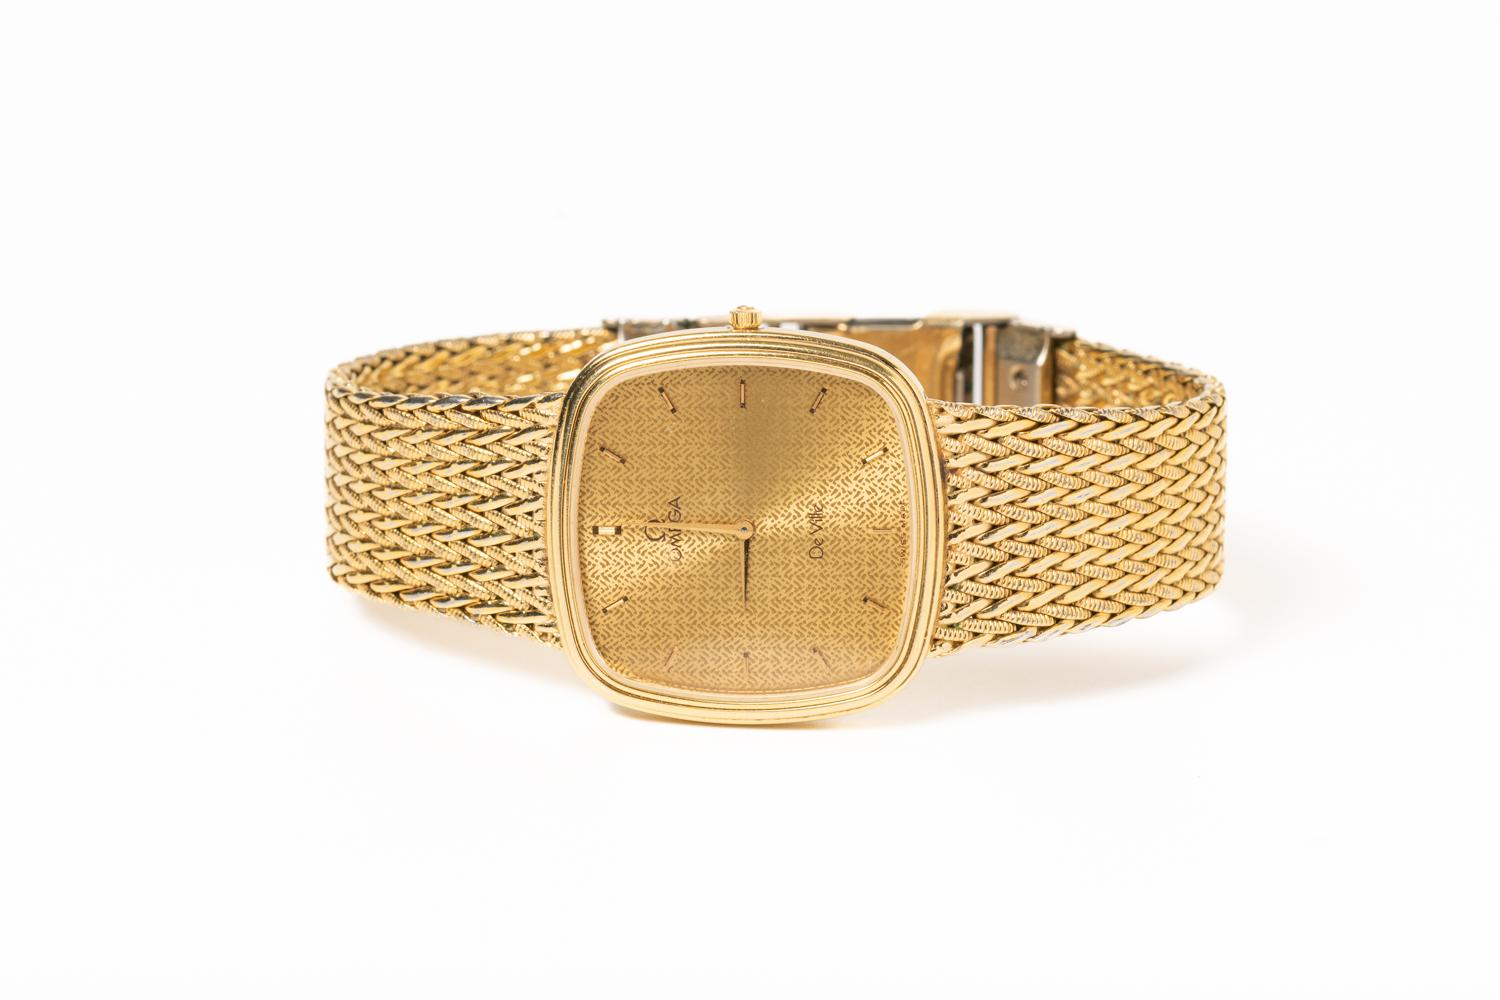 Une élégante et classique Omega De Ville Quartz des années 1980 avec un bracelet en or original et superbe et un cadran de montre en or qui l'accompagne. Avec son look intemporel, cette Omega allie l'esthétique minimaliste des années 80 à la